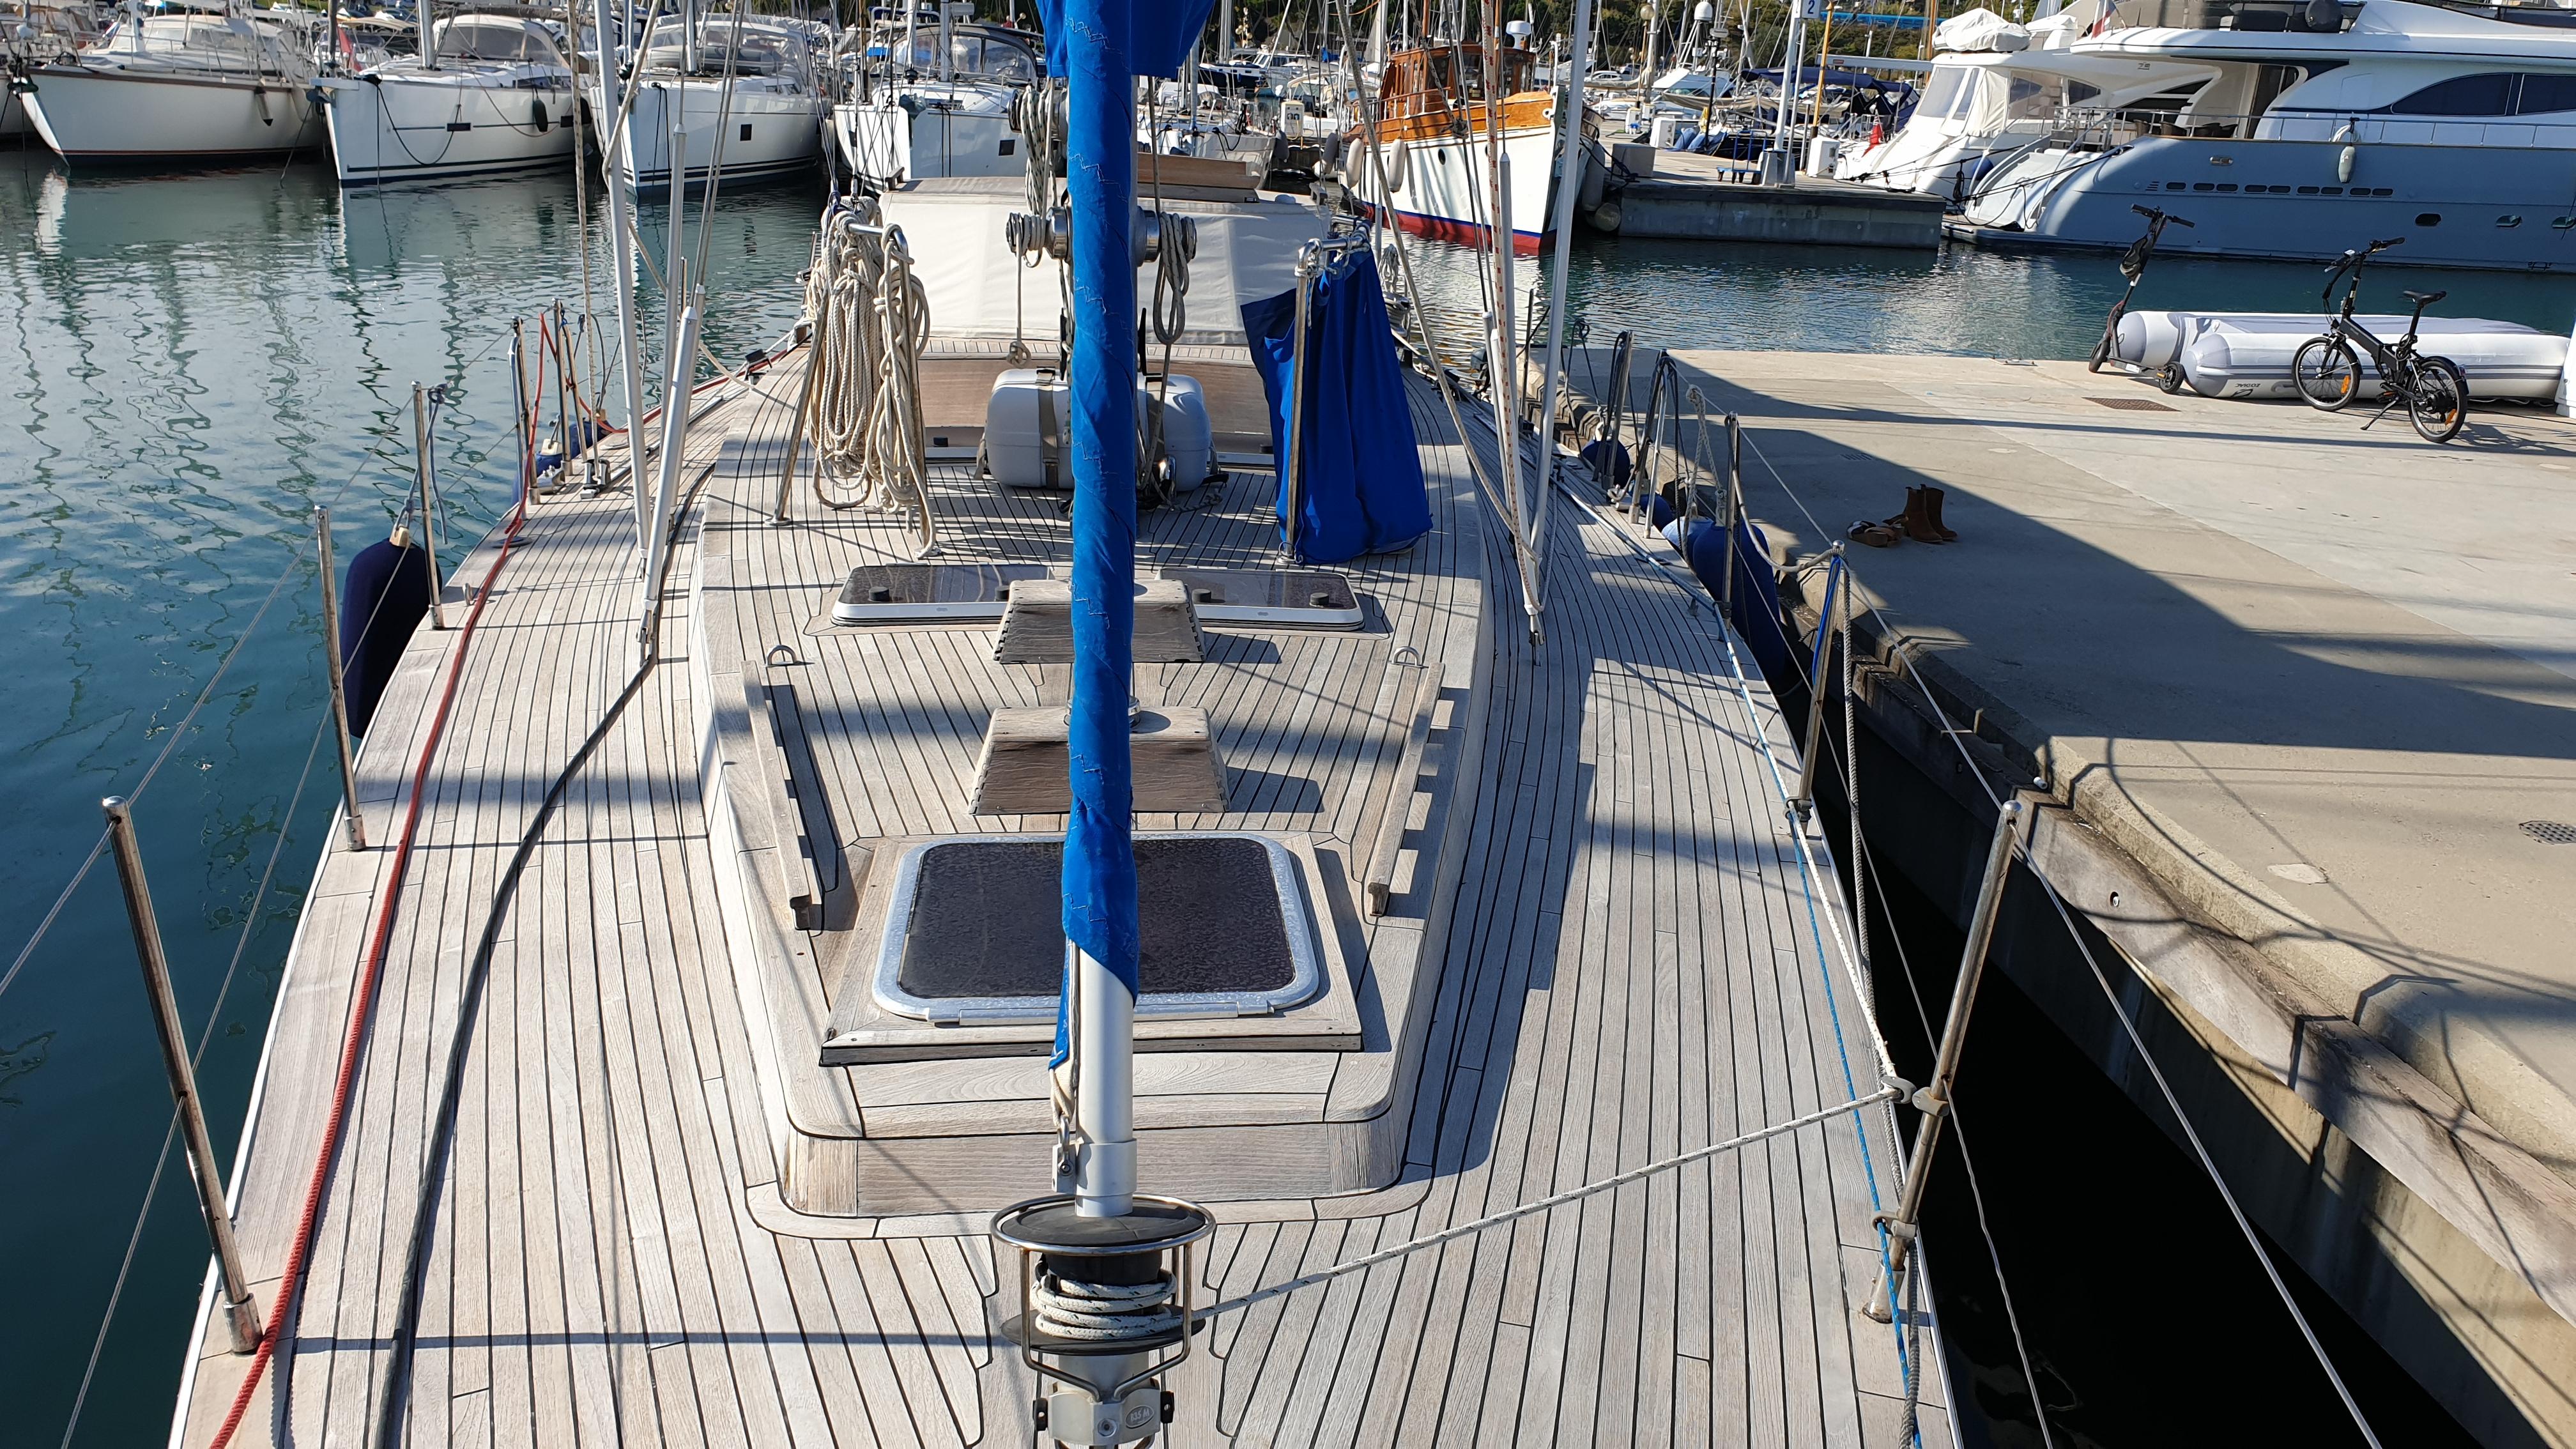 SY Carolina  Network Yacht Brokers Antibes